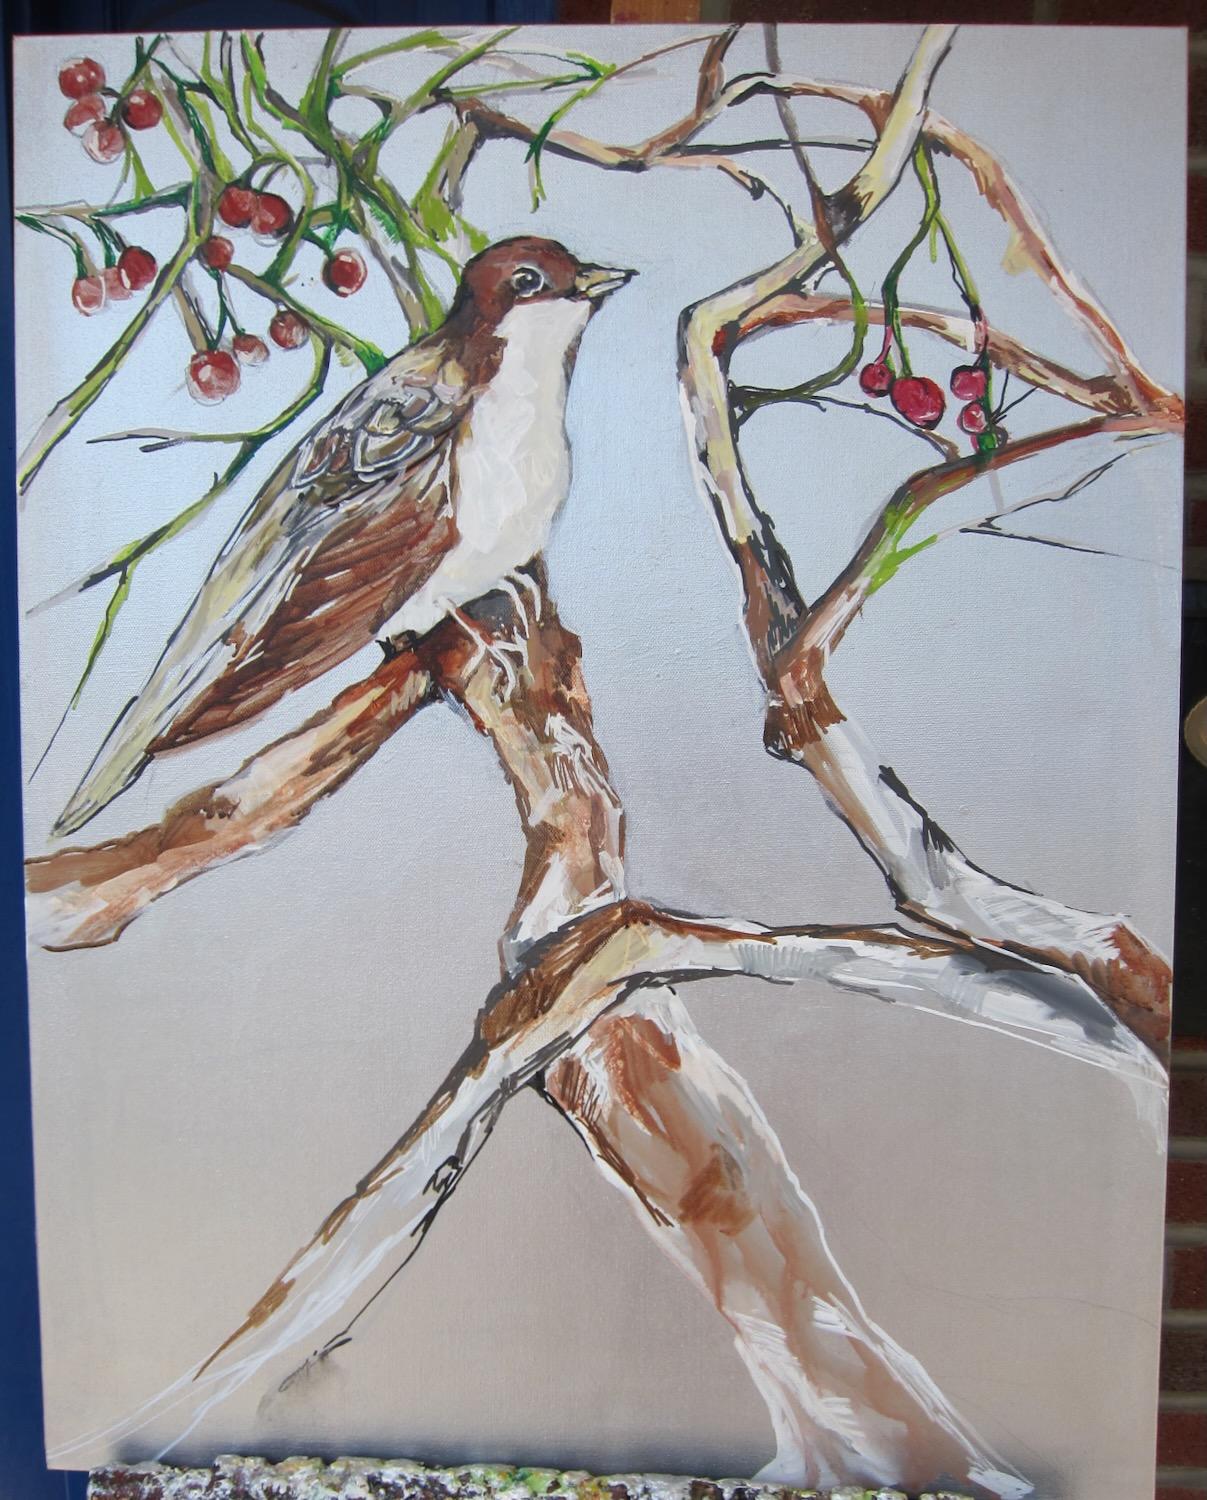 <p>Commentaires des artistes<br>L'artiste Colette Wirz Nauke peint un oiseau perché sur un arbre. Des baies rouges dodues ornent les branches sinueuses, créant une impression de mouvement et de vitalité à l'œuvre. Les fines et subtiles couches de